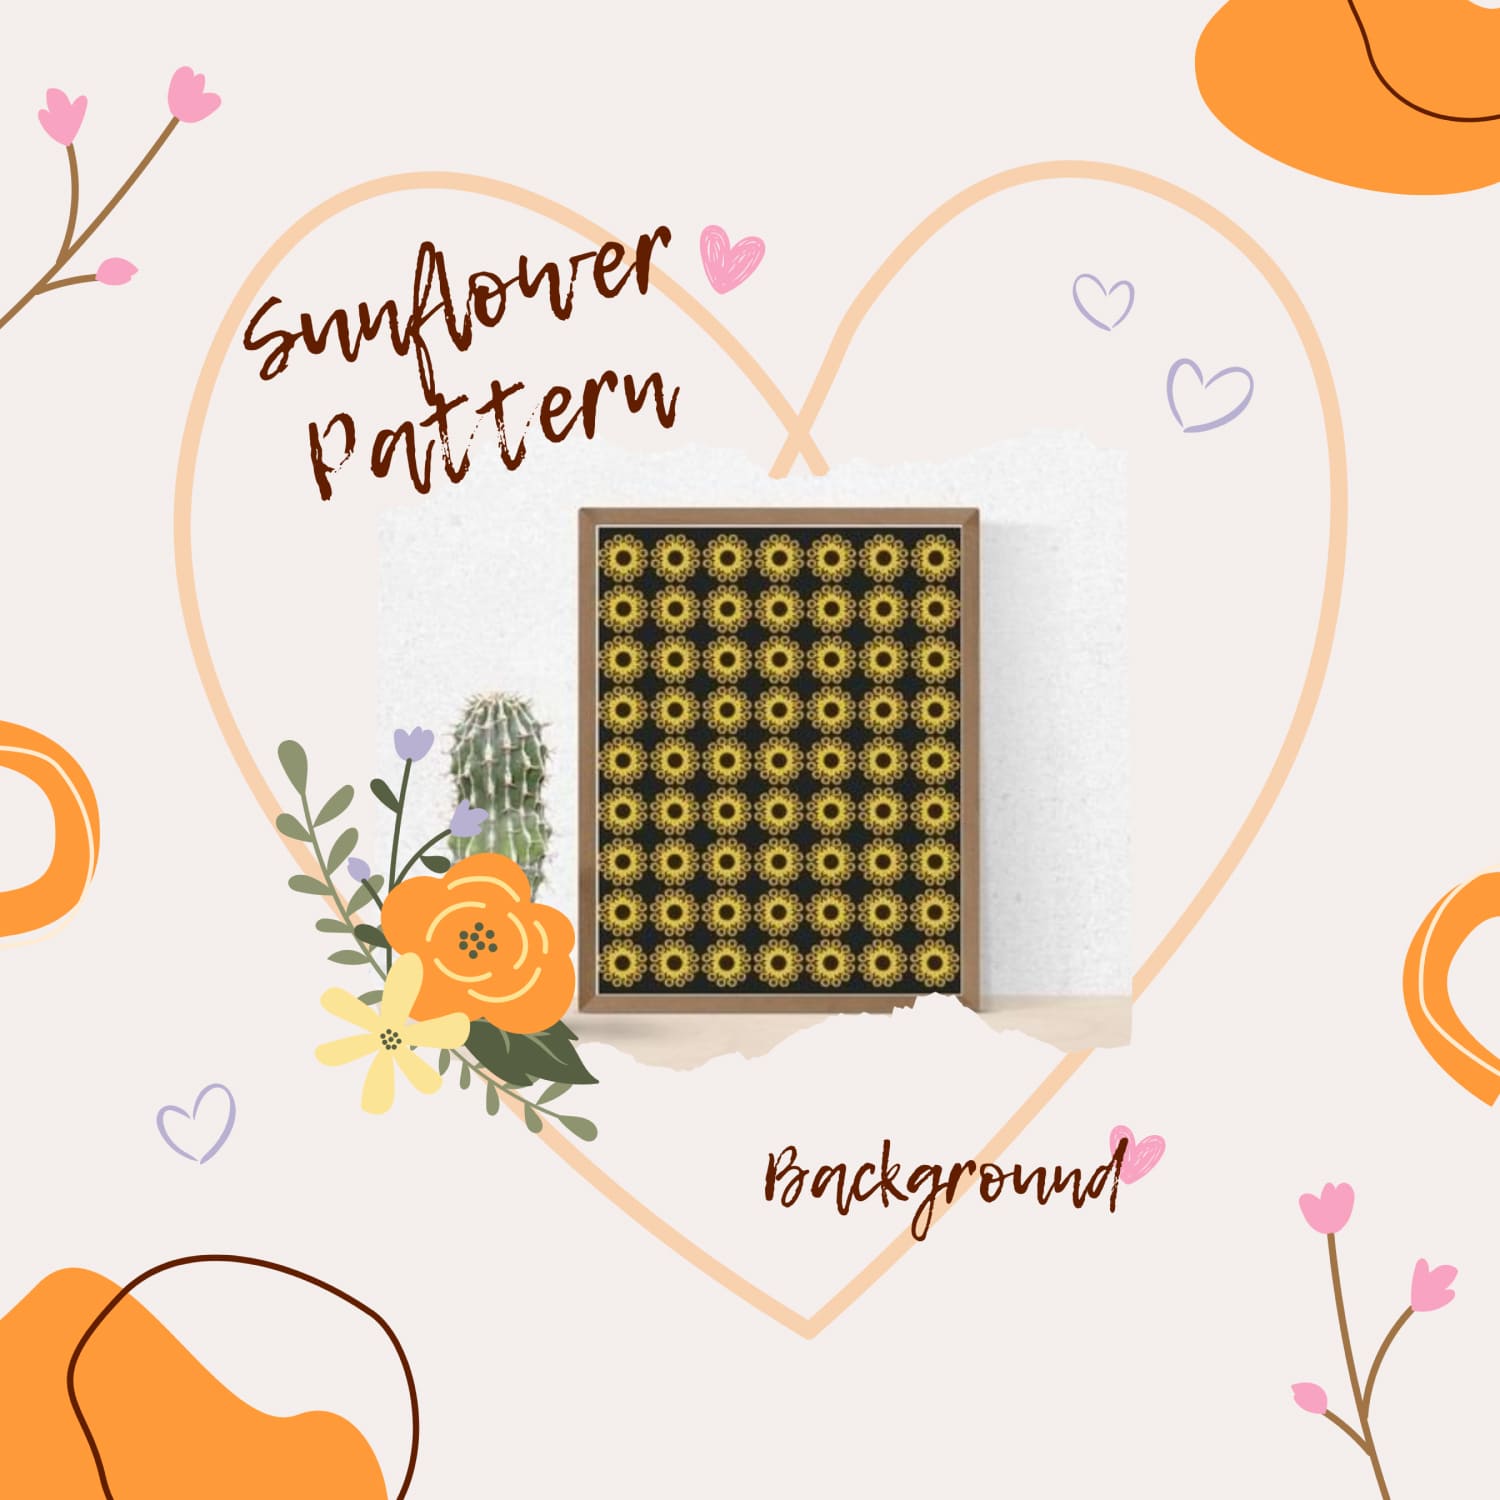 Sunflower patterns Background.